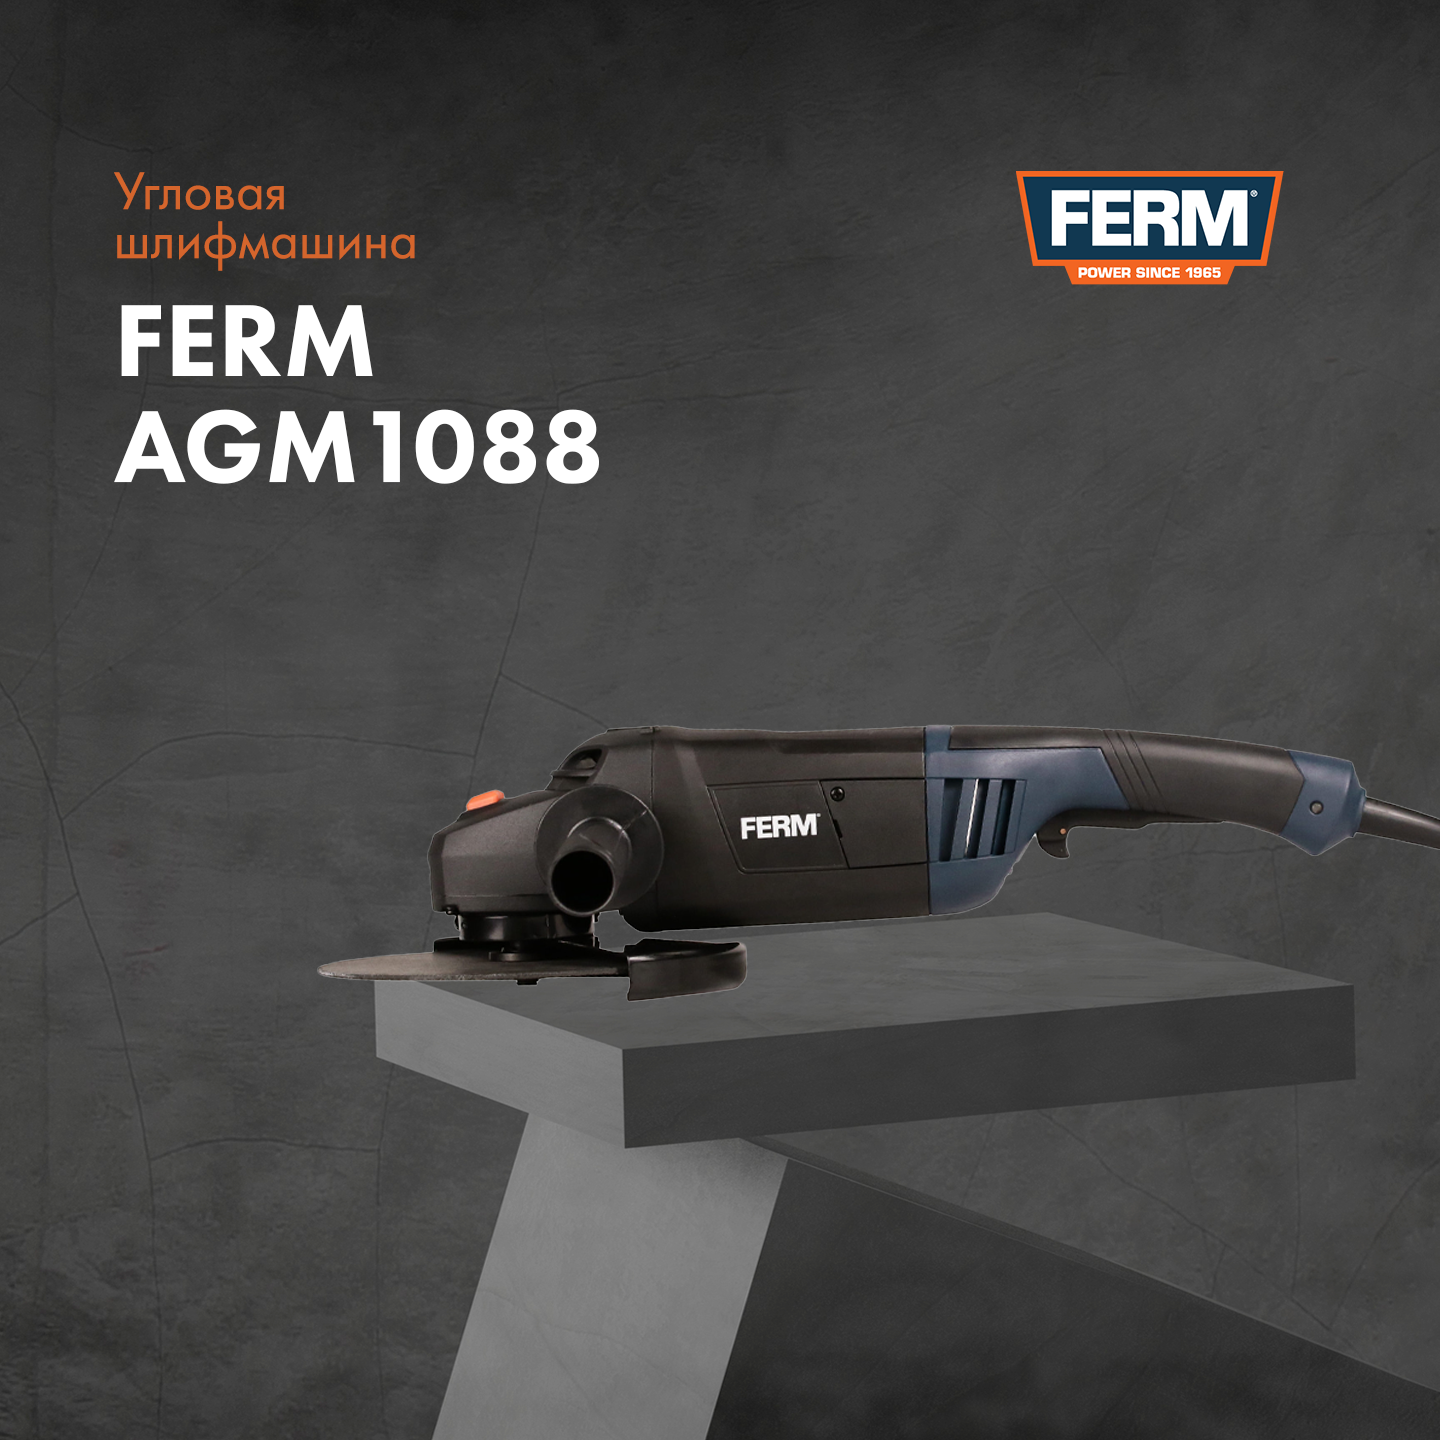  угловая шлифовальная машина FERM AGM1088| Производитель FERM